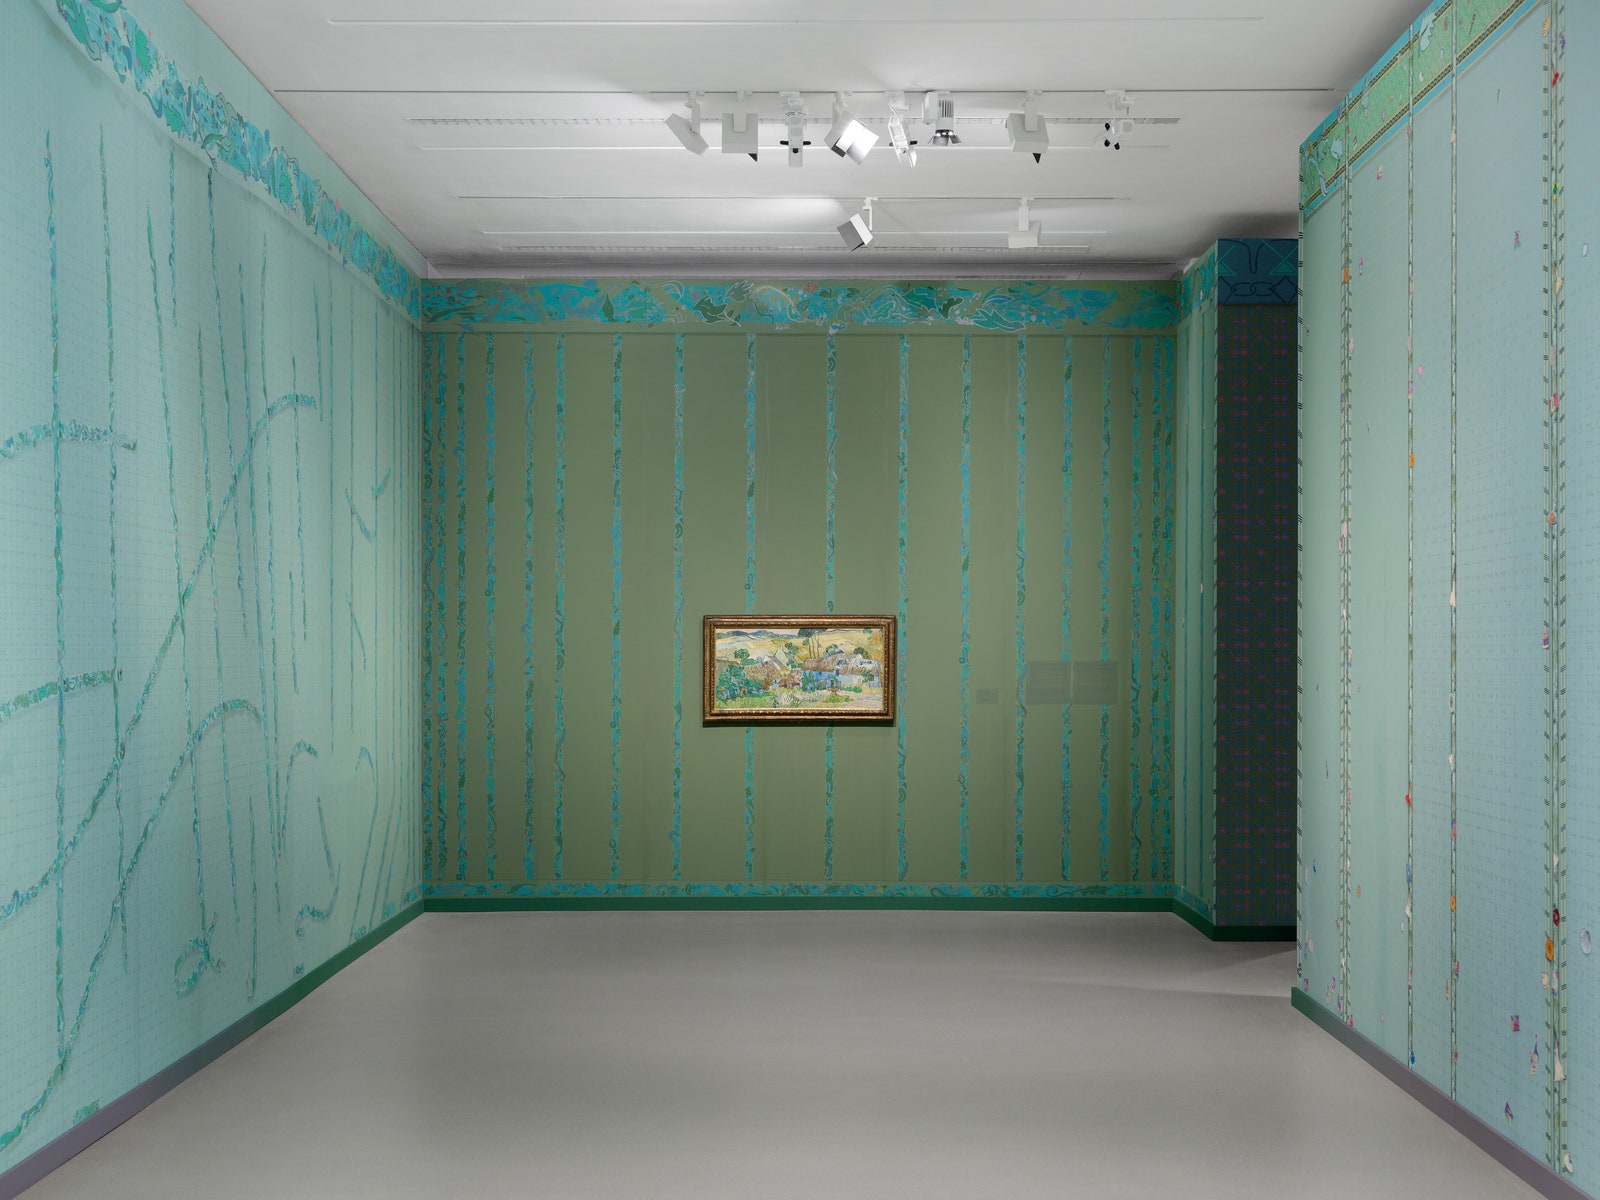 Необычная выставка картин Ван Гога в Арле